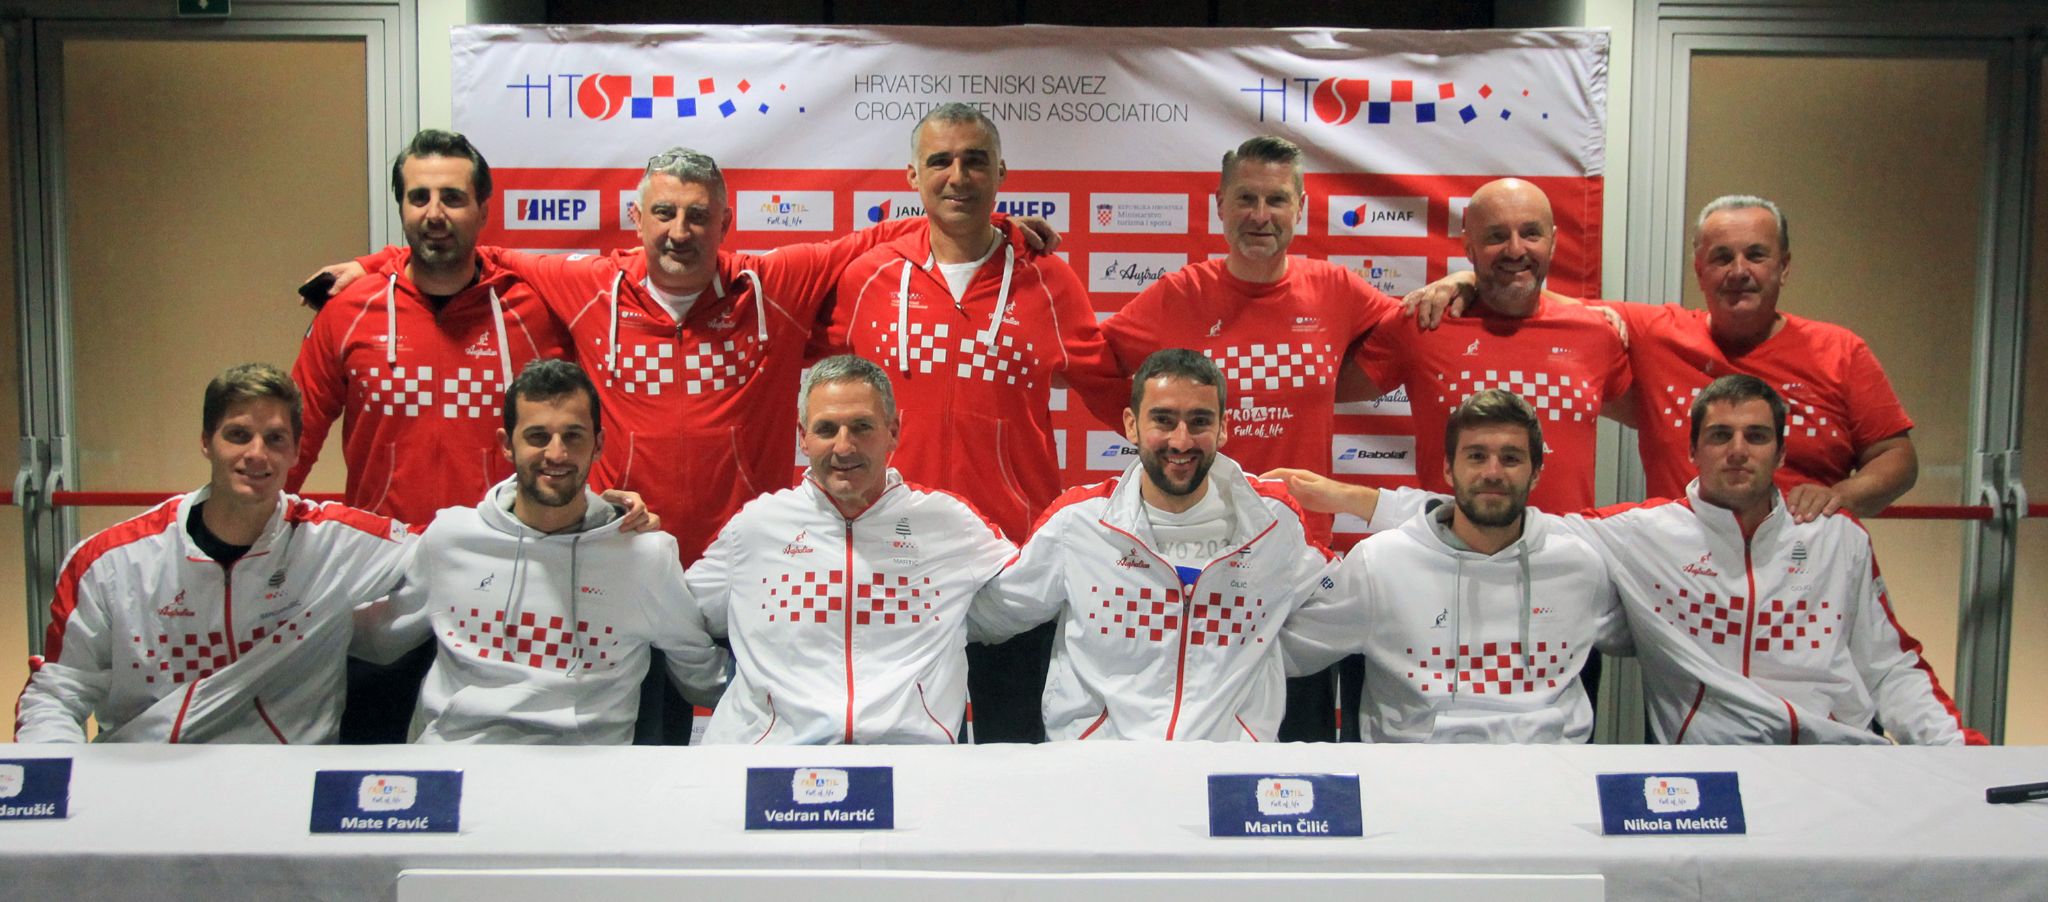 Davis Cup: Hrvatska u Bolognu u najjačoj postavi